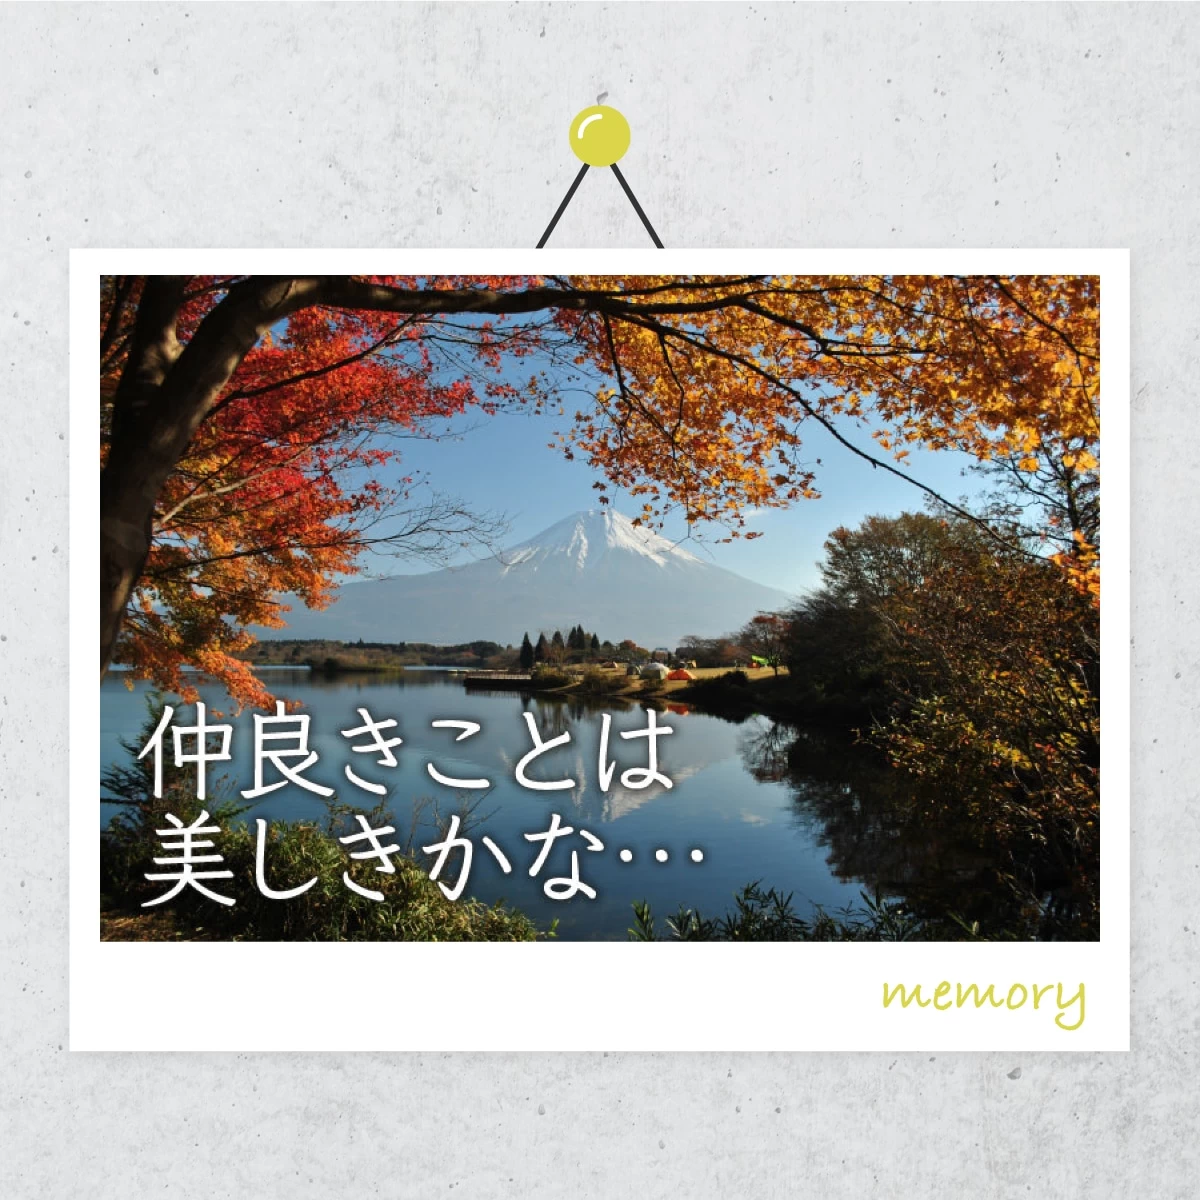 「富士河口湖紅葉まつり」を見に行こう！富士五湖で紅葉めぐり旅